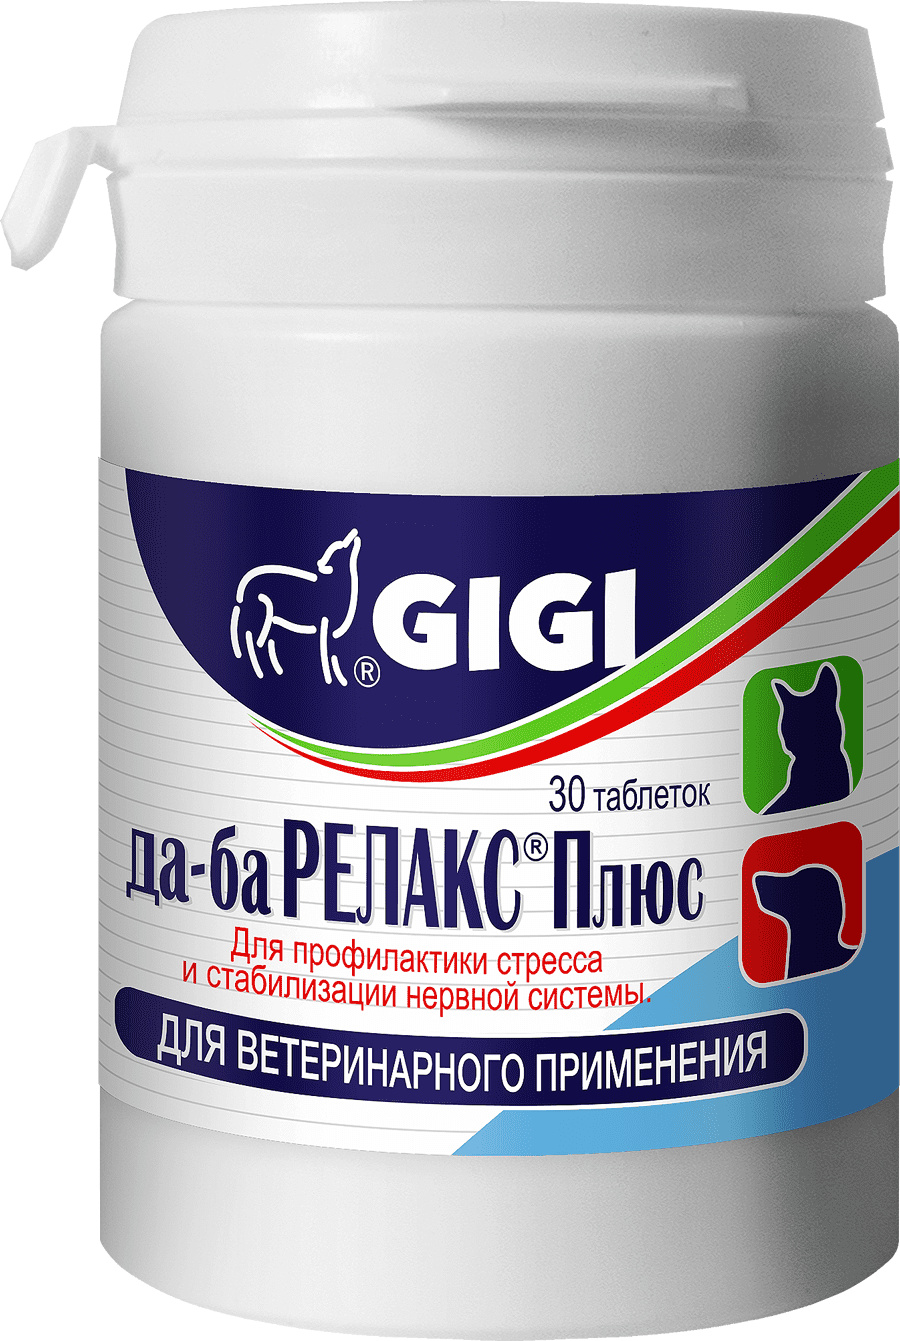 препарат для собак и кошек gigi да ба релакс плюс 30 таб GIGI GIGI да-ба Релакс Плюс №30 для профилактики стресса и стабилизации нервной системы,30 таблеток (62 г)